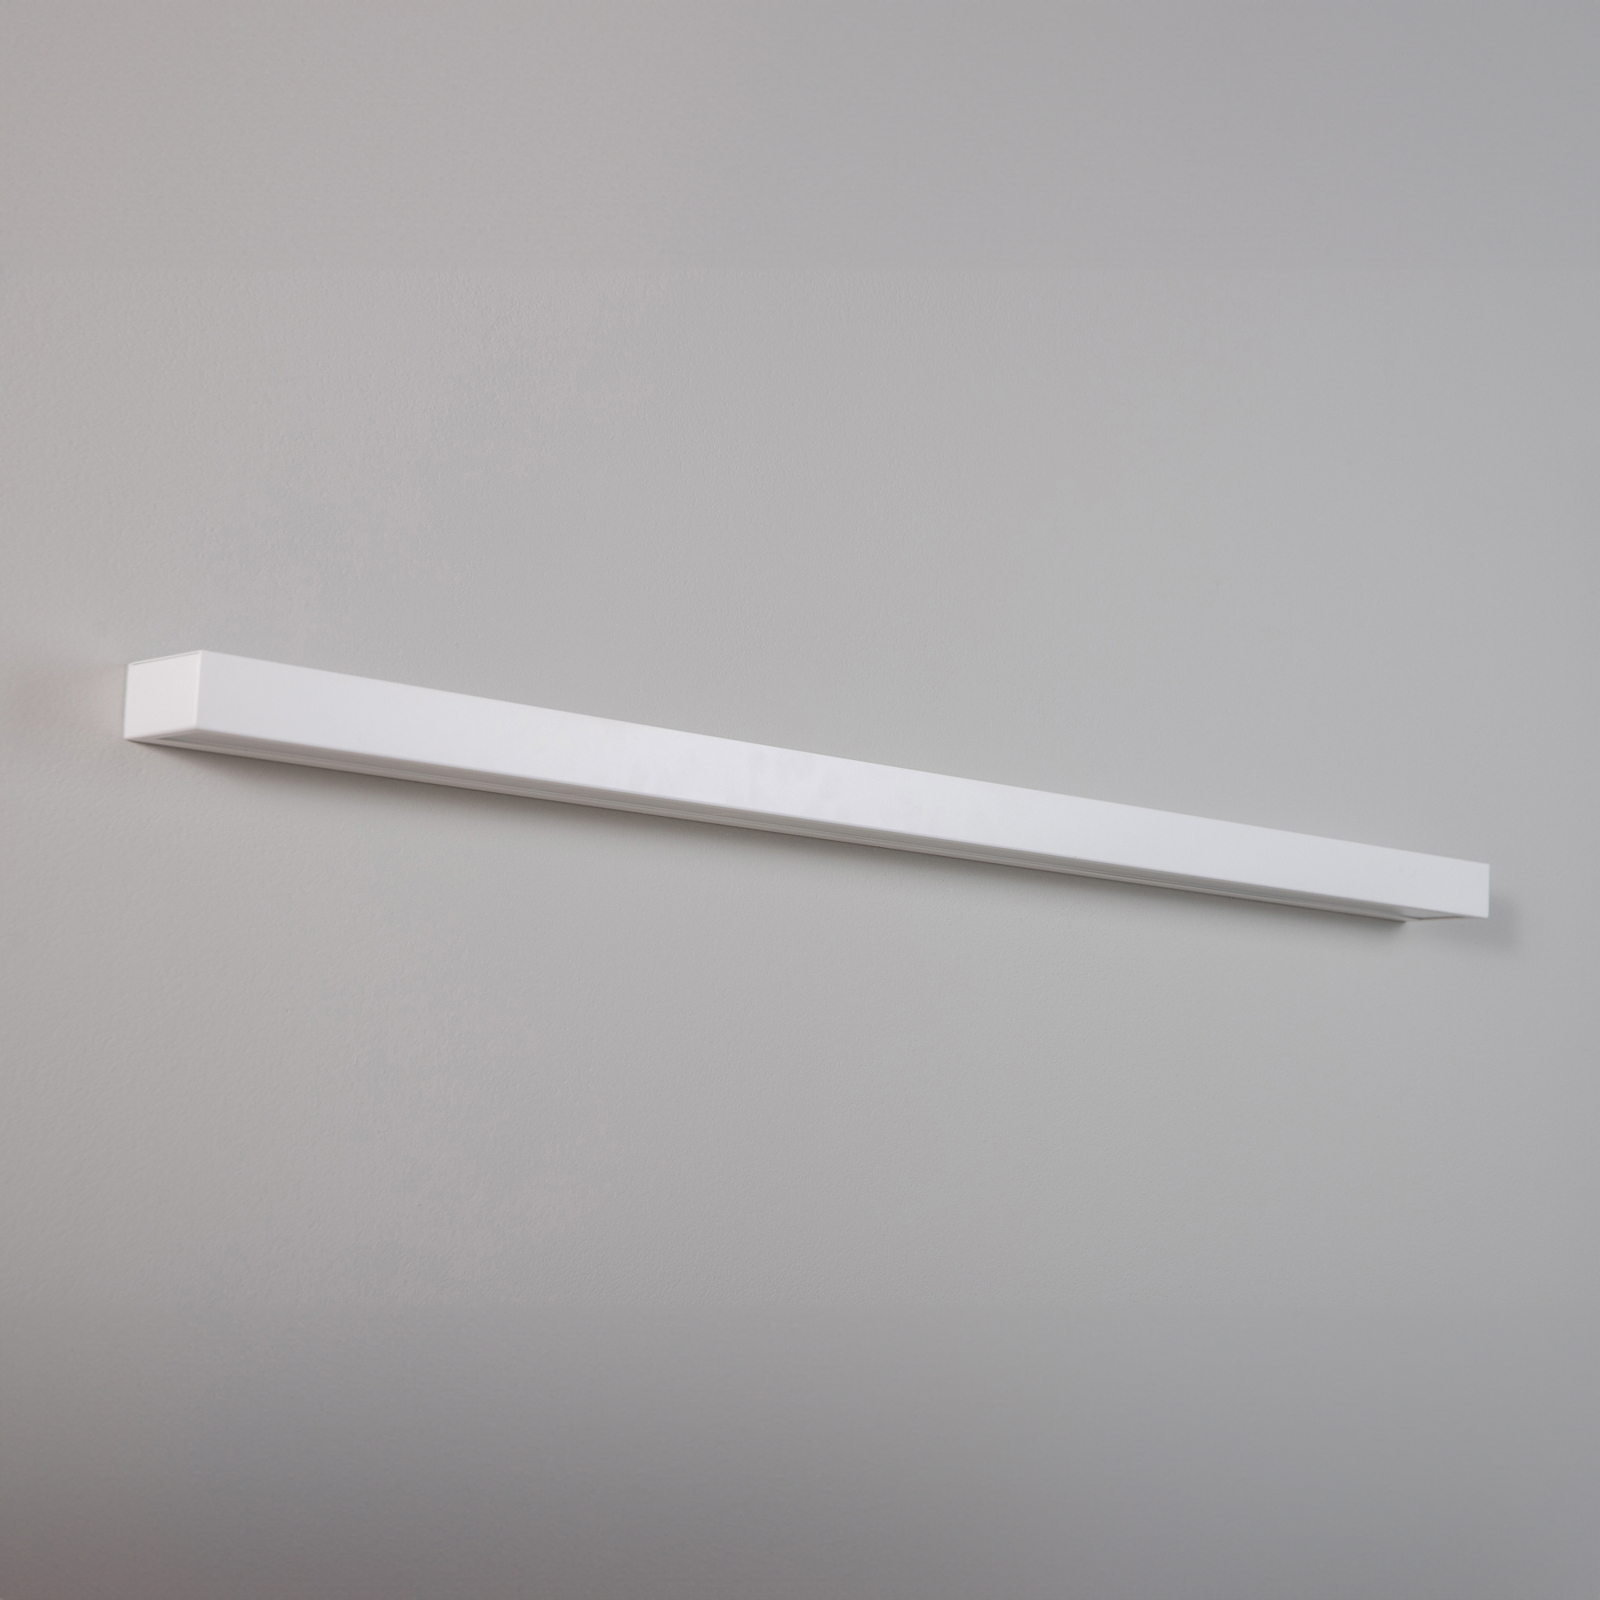 LED nástěnné světlo Mera, šířka 120cm, bílá, 3000K